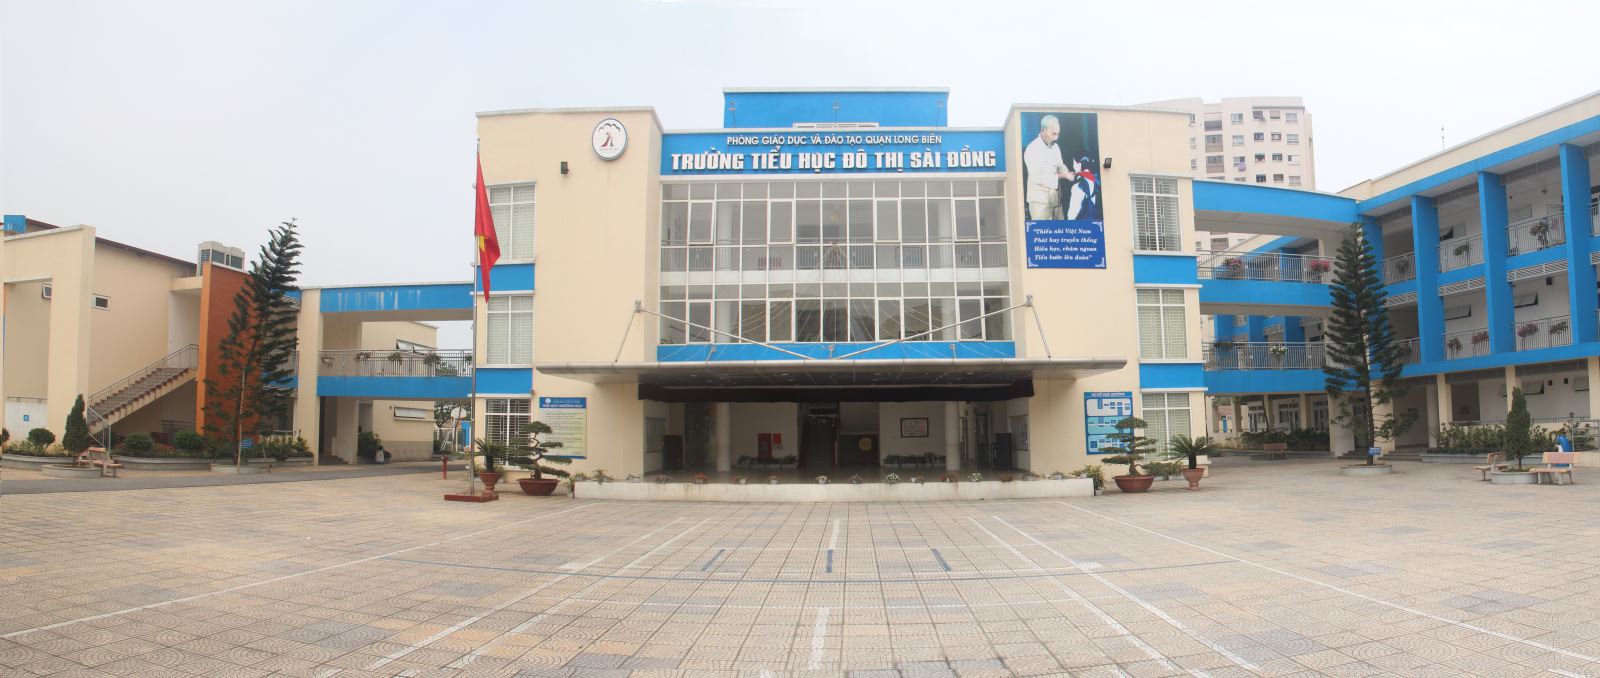 Trường TH Đô thị Sài Đồng 5 năm thành lập và phát triển